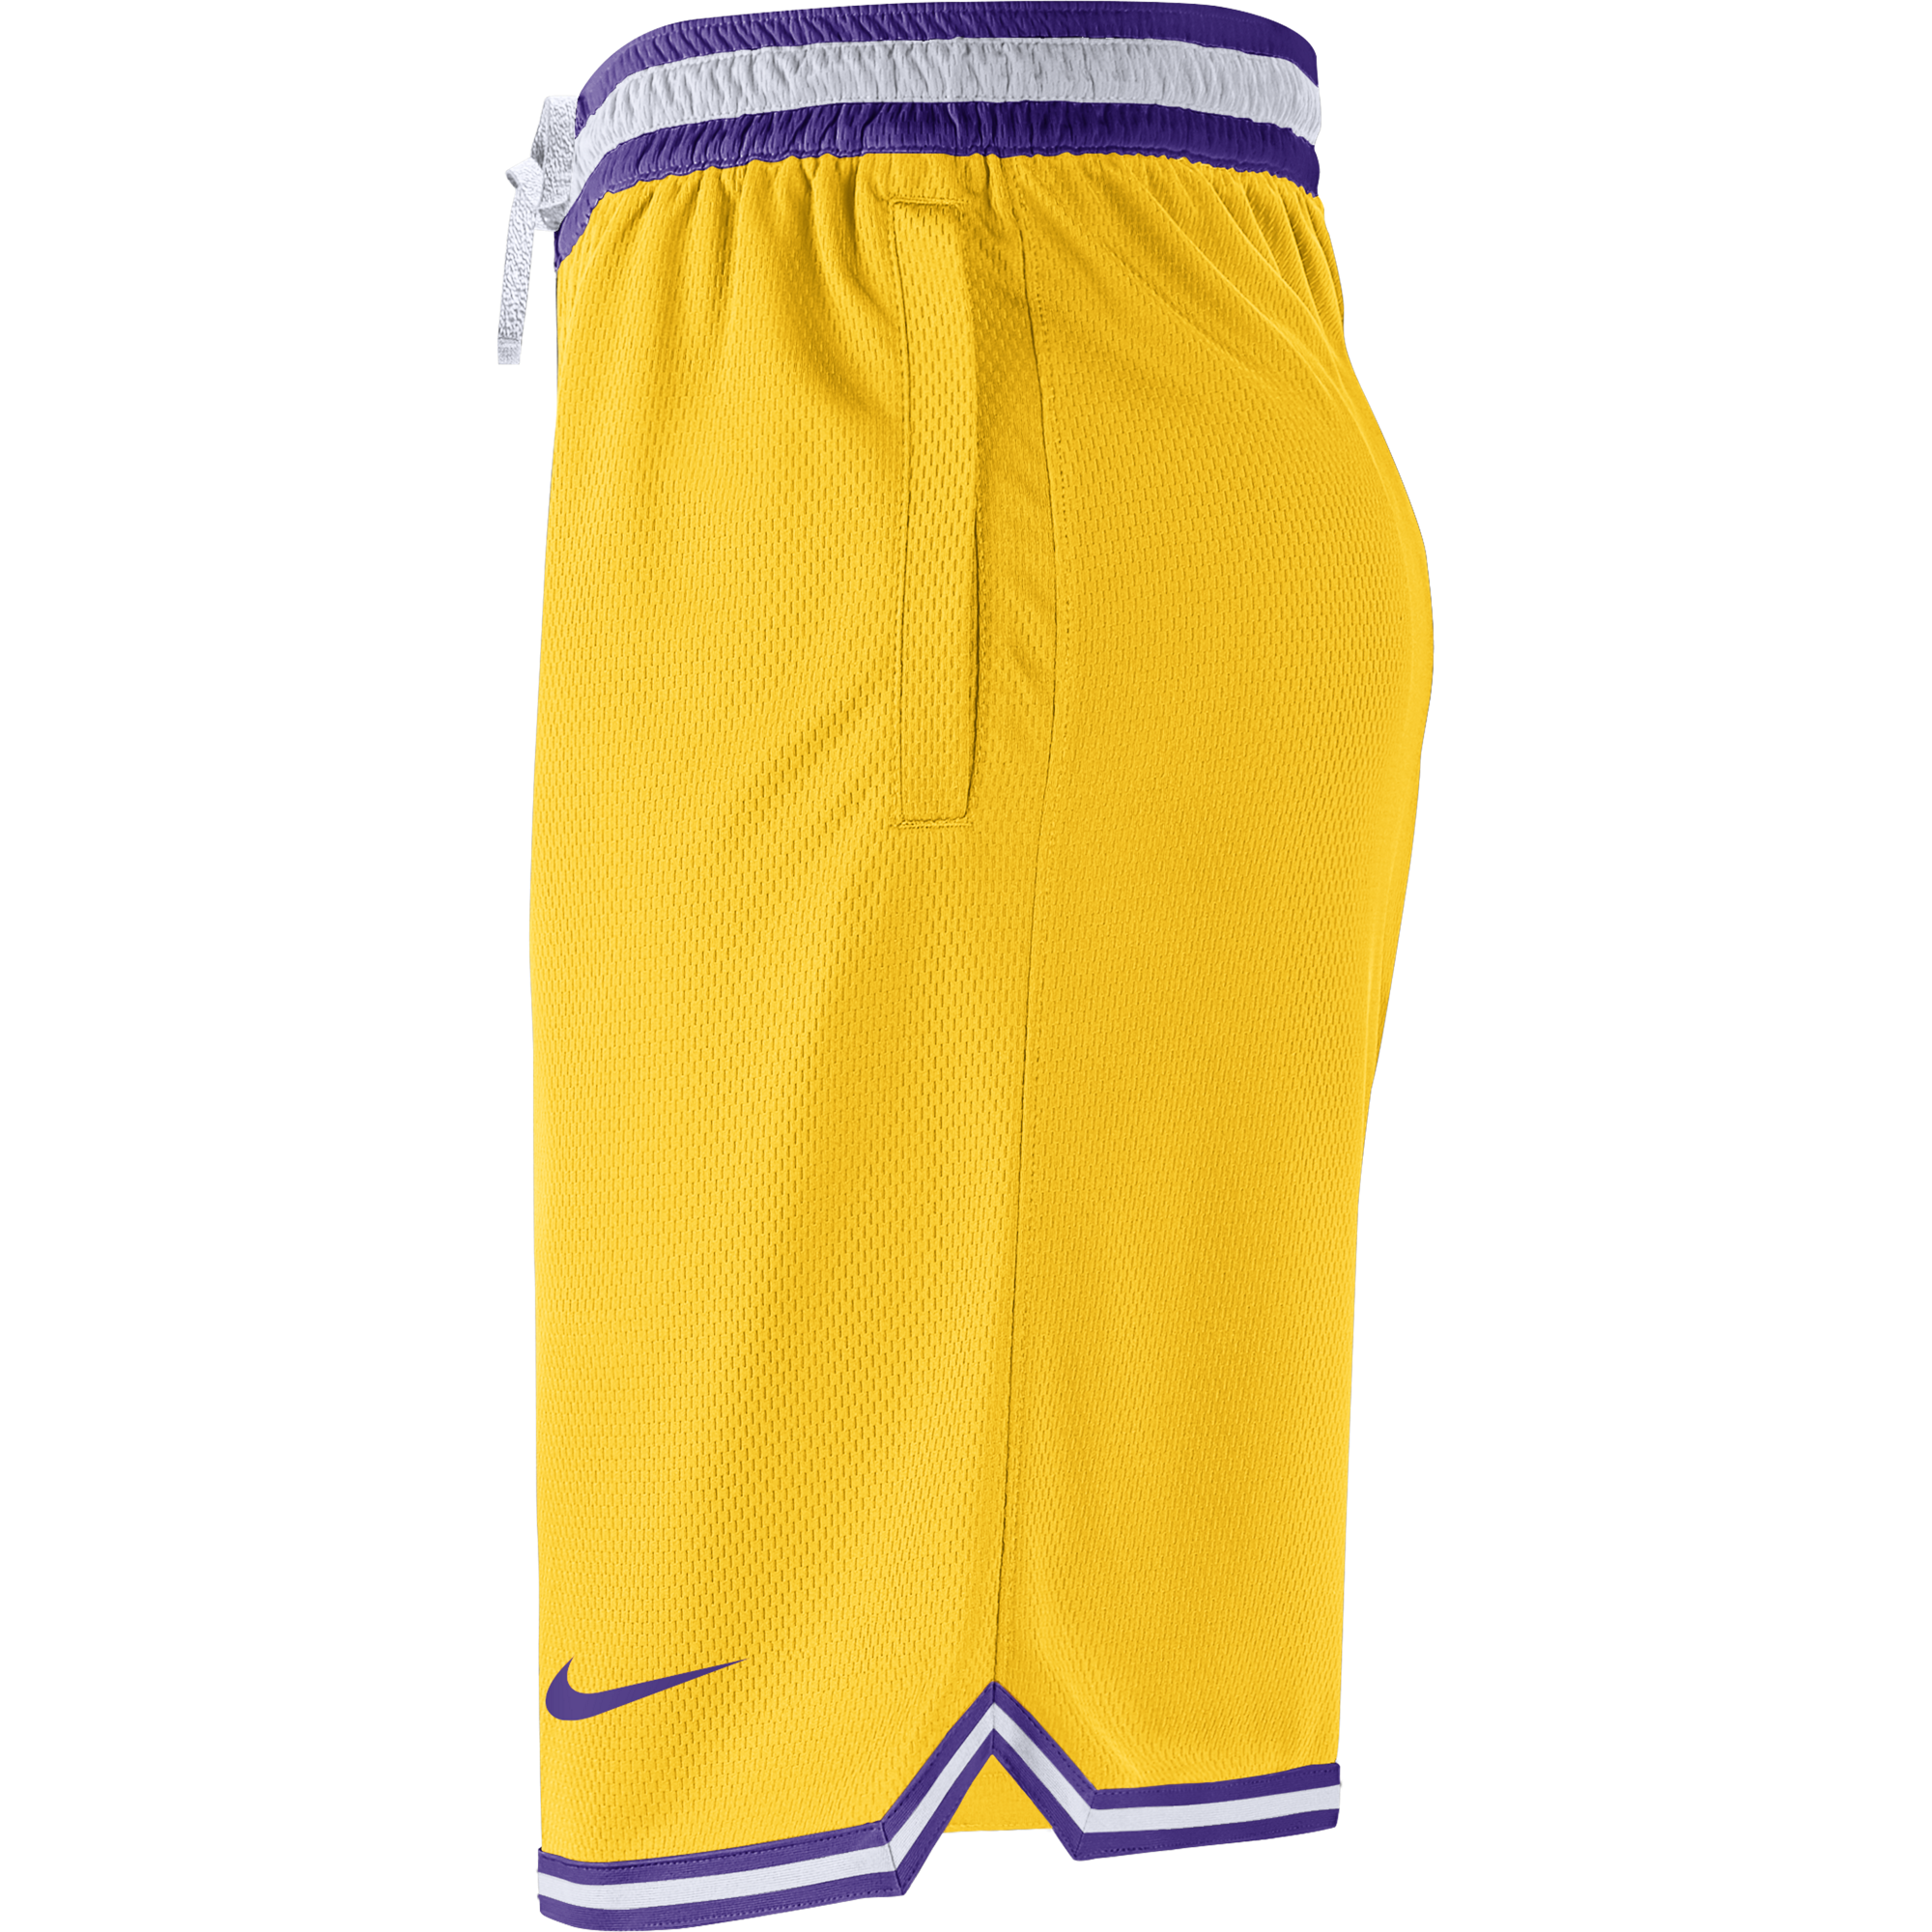 NBA Women's Shorts - Yellow - M